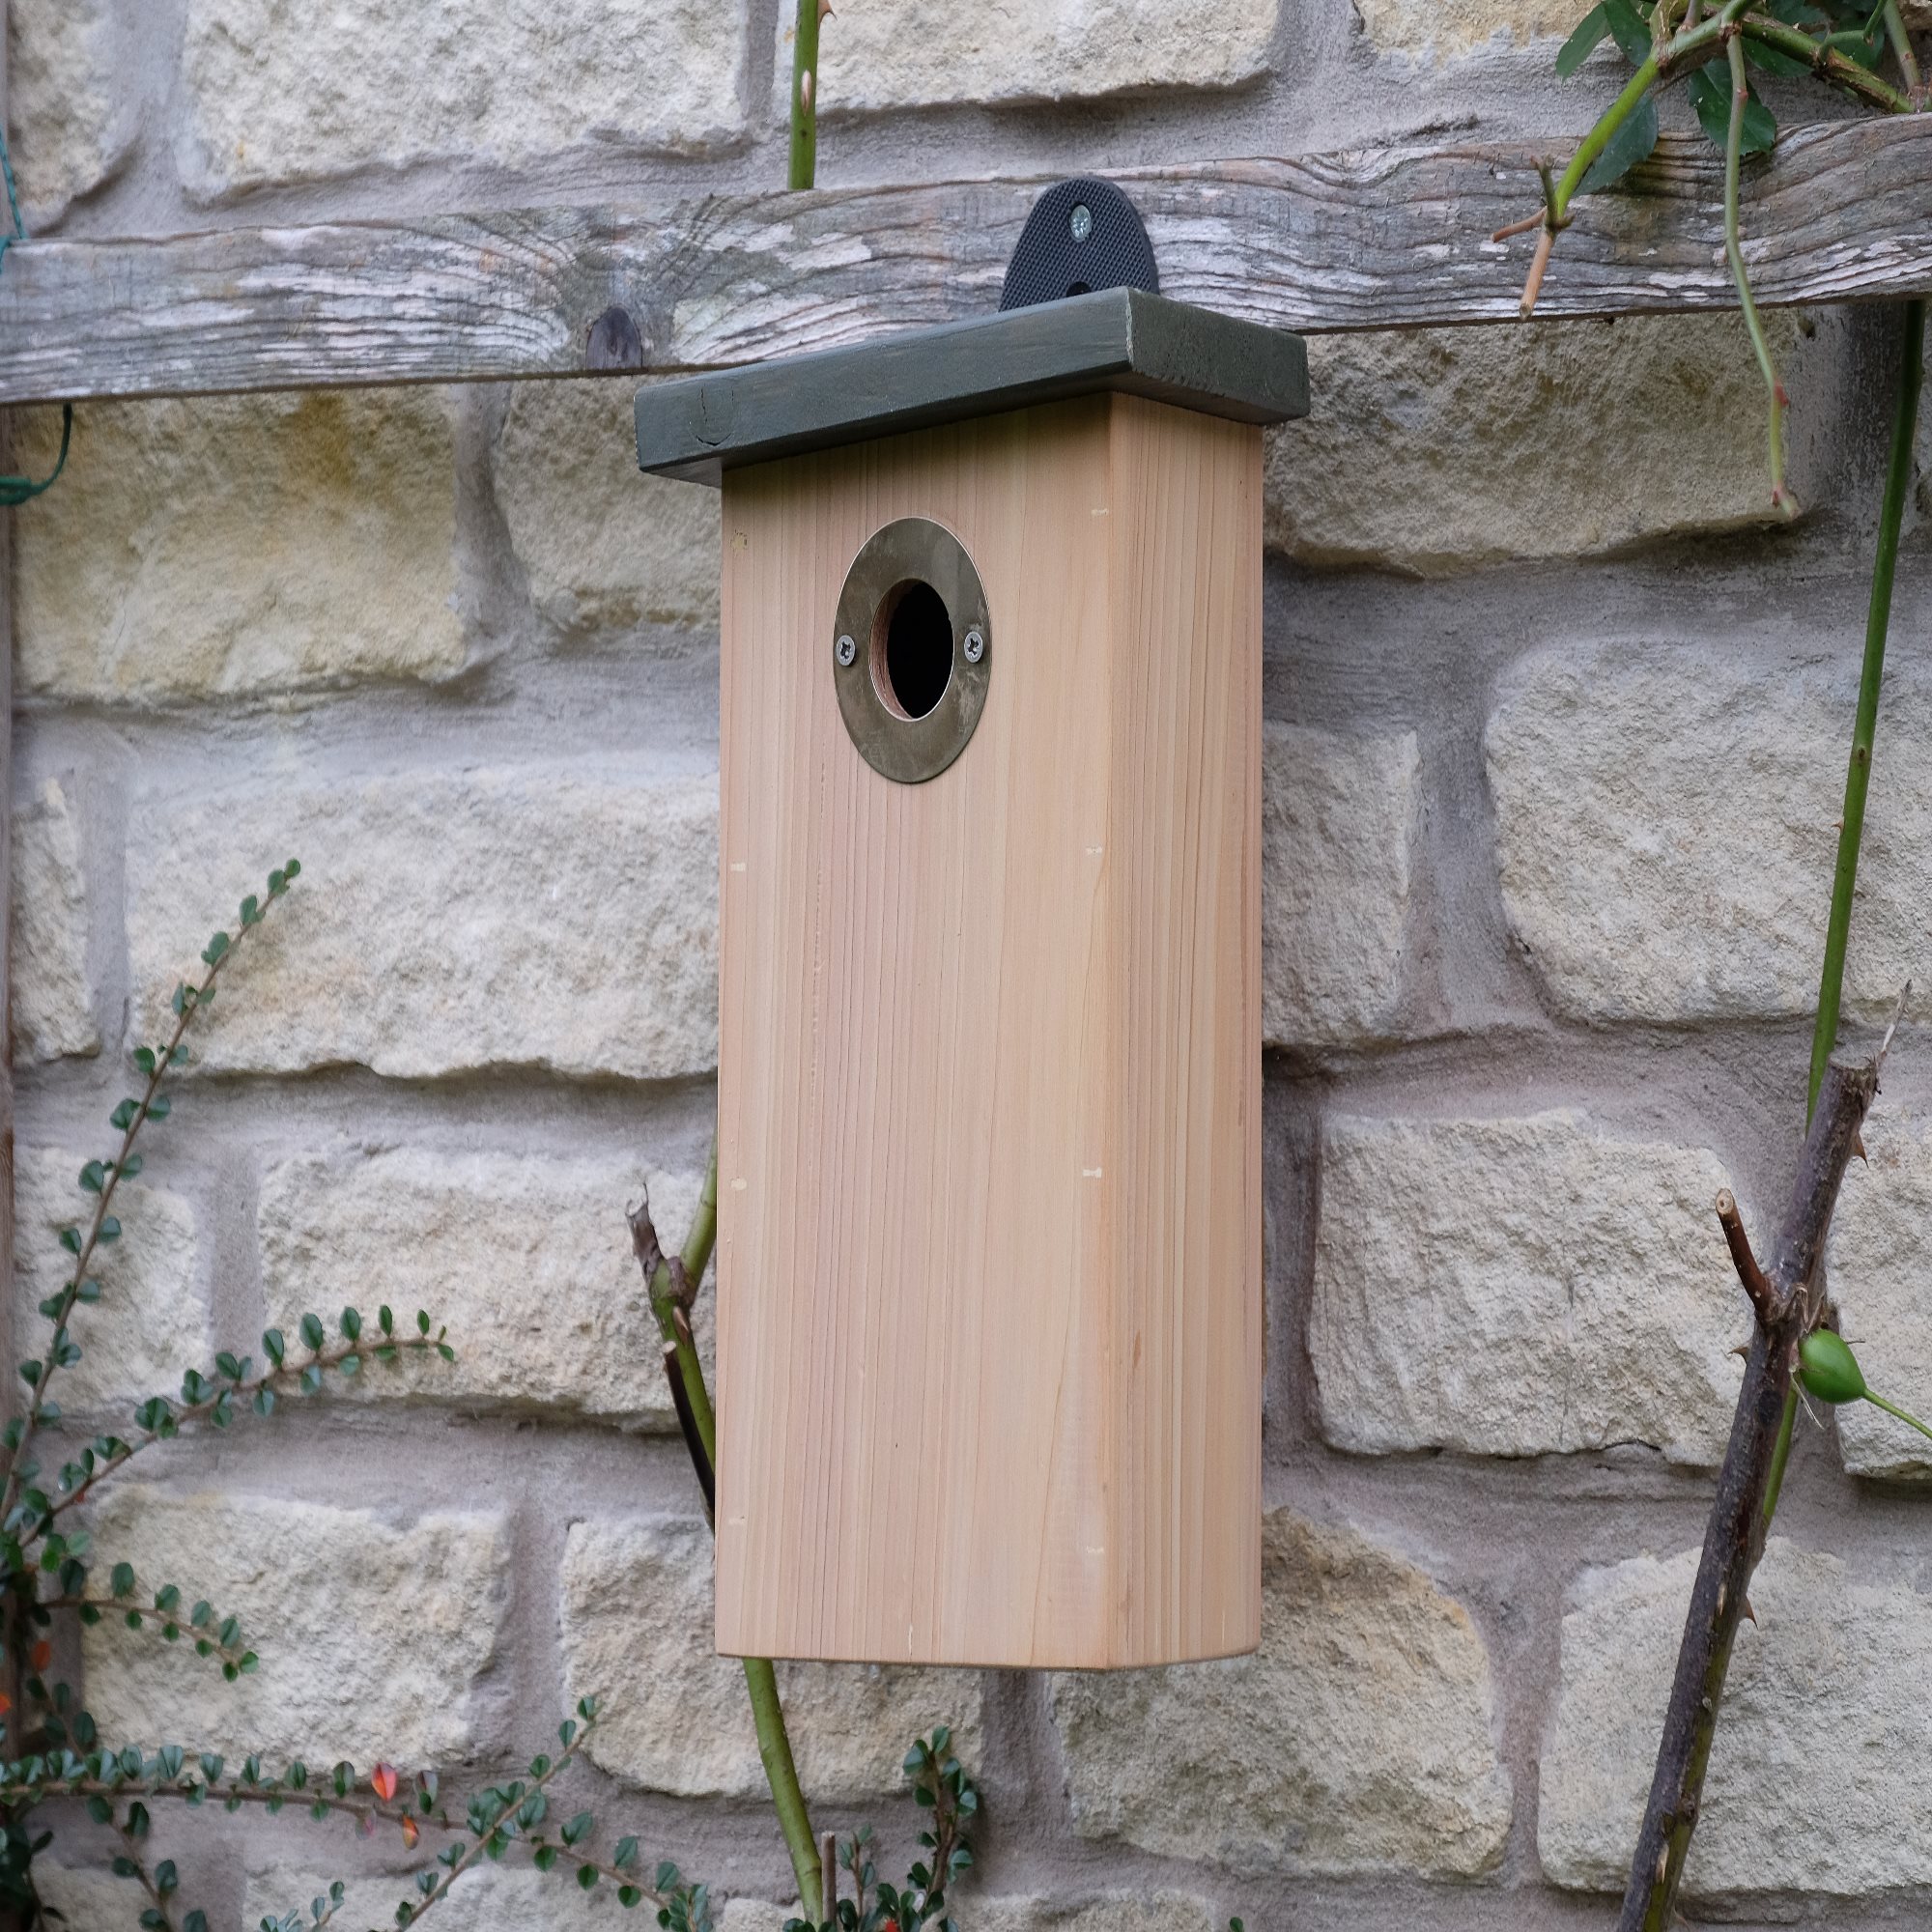 Wildlife Nest Boxes